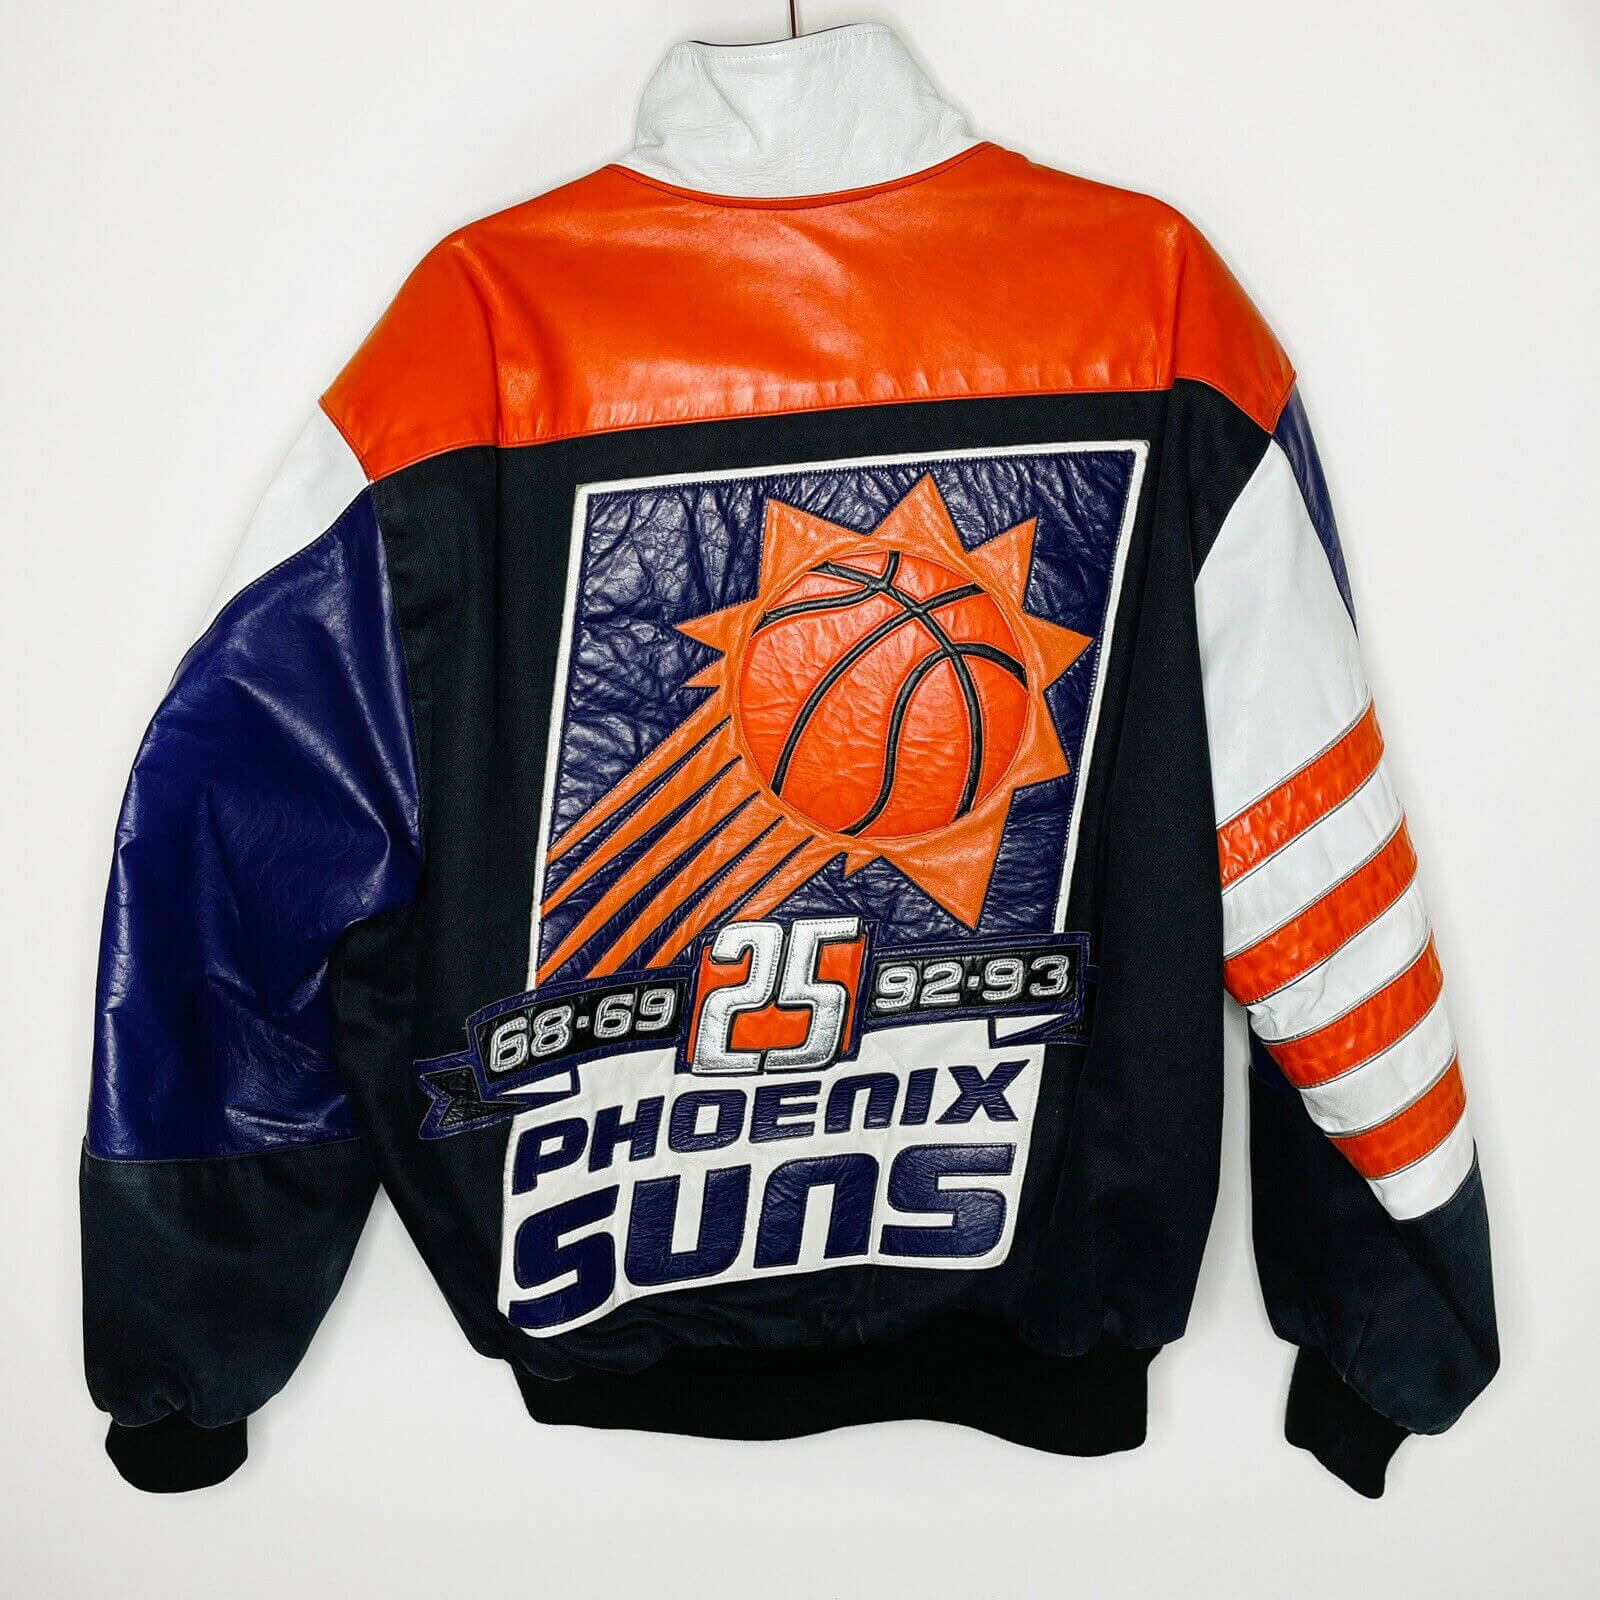 Vintage Jeff Hamilton NBA Phoenix Suns Jacket - Maker of Jacket